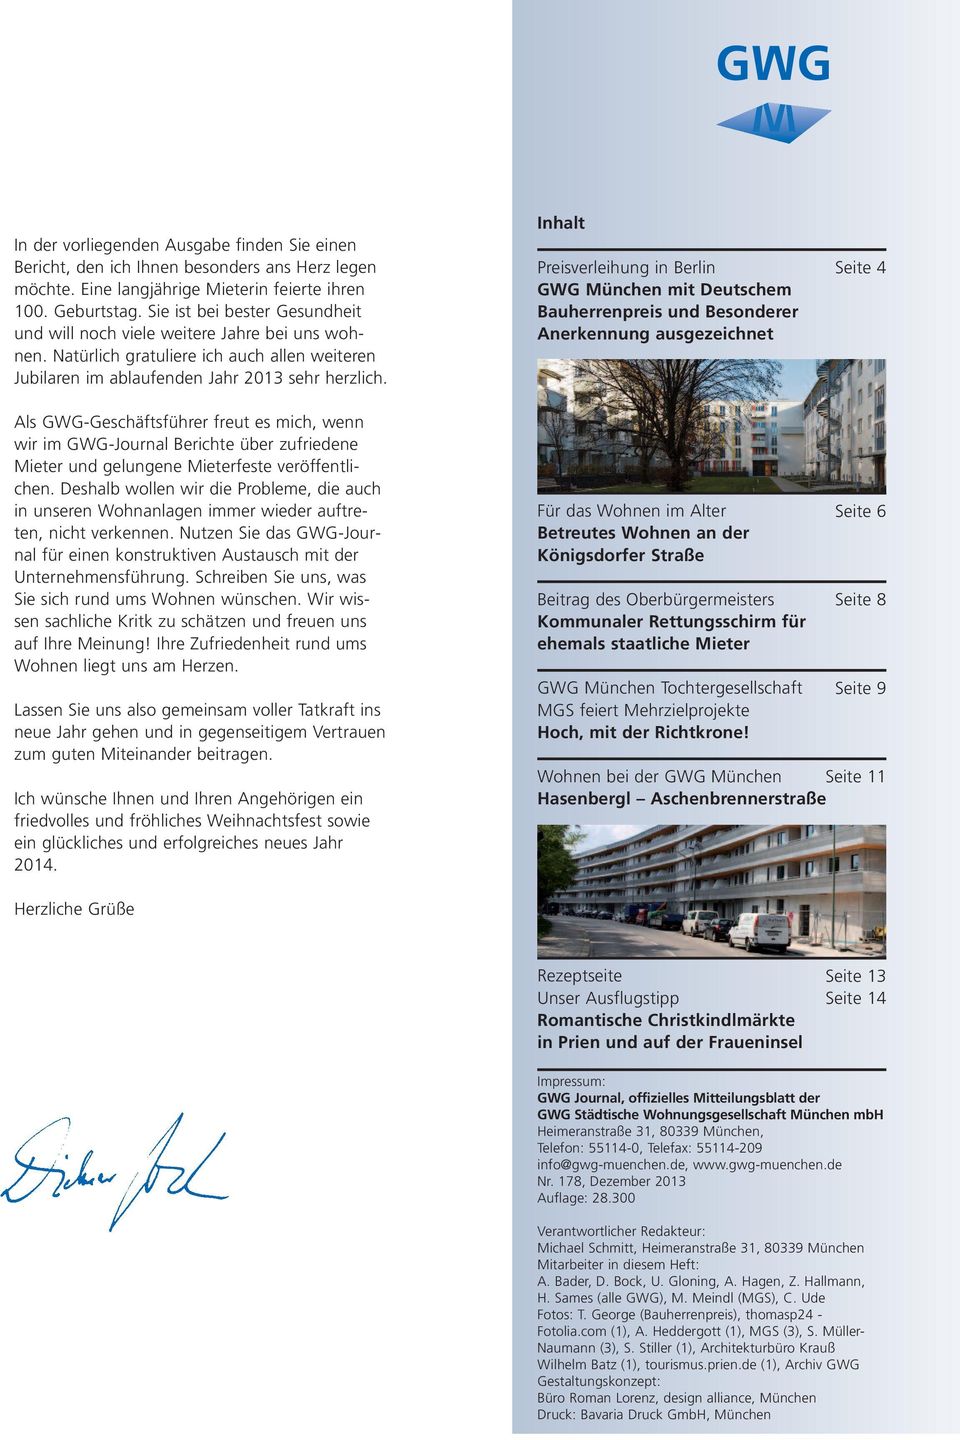 Inhalt Preisverleihung in Berlin GWG München mit Deutschem Bauherrenpreis und Besonderer Anerkennung ausgezeichnet Seite 4 Als GWG-Geschäftsführer freut es mich, wenn wir im GWG-Journal Berichte über